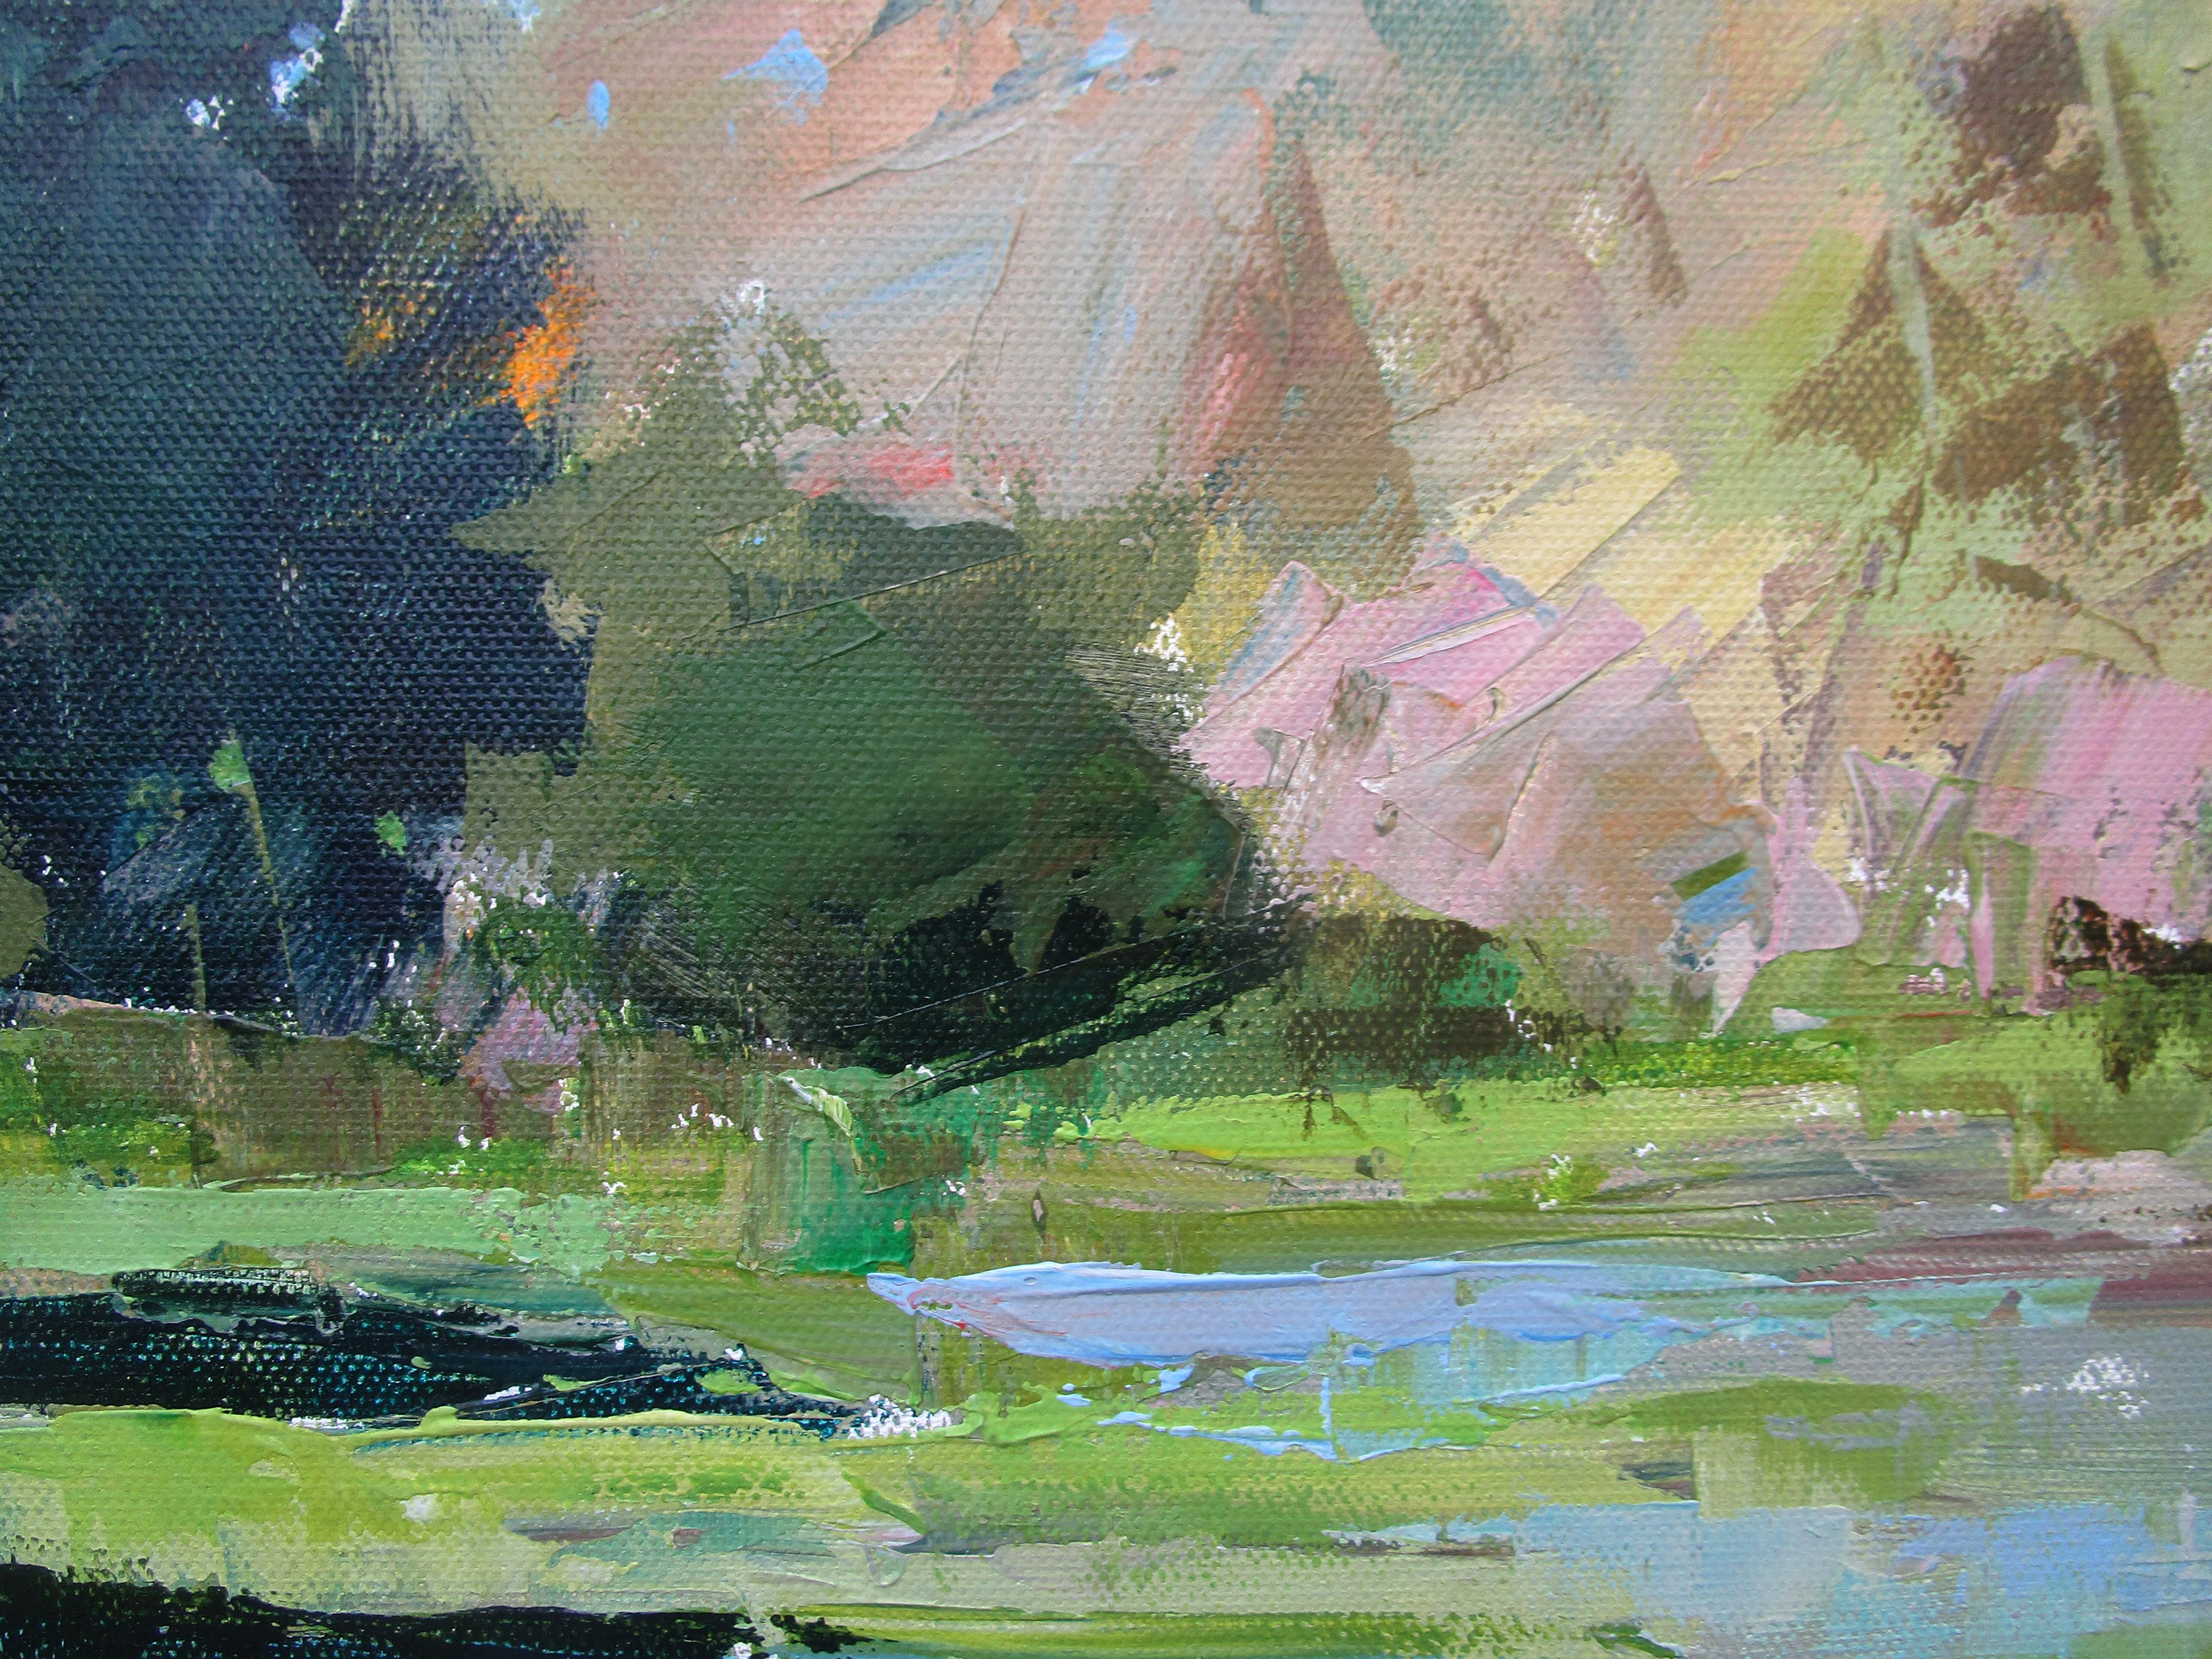 <p>Kommentare des Künstlers<br>Ein ruhiger See spiegelt den blauen Himmel und die umliegenden Bäume auf seiner stillen Oberfläche wider. Das Laub spiegelt den Wechsel der Jahreszeiten wider, vom hellen Sommertag bis zum kühlen Herbstwind. Mit